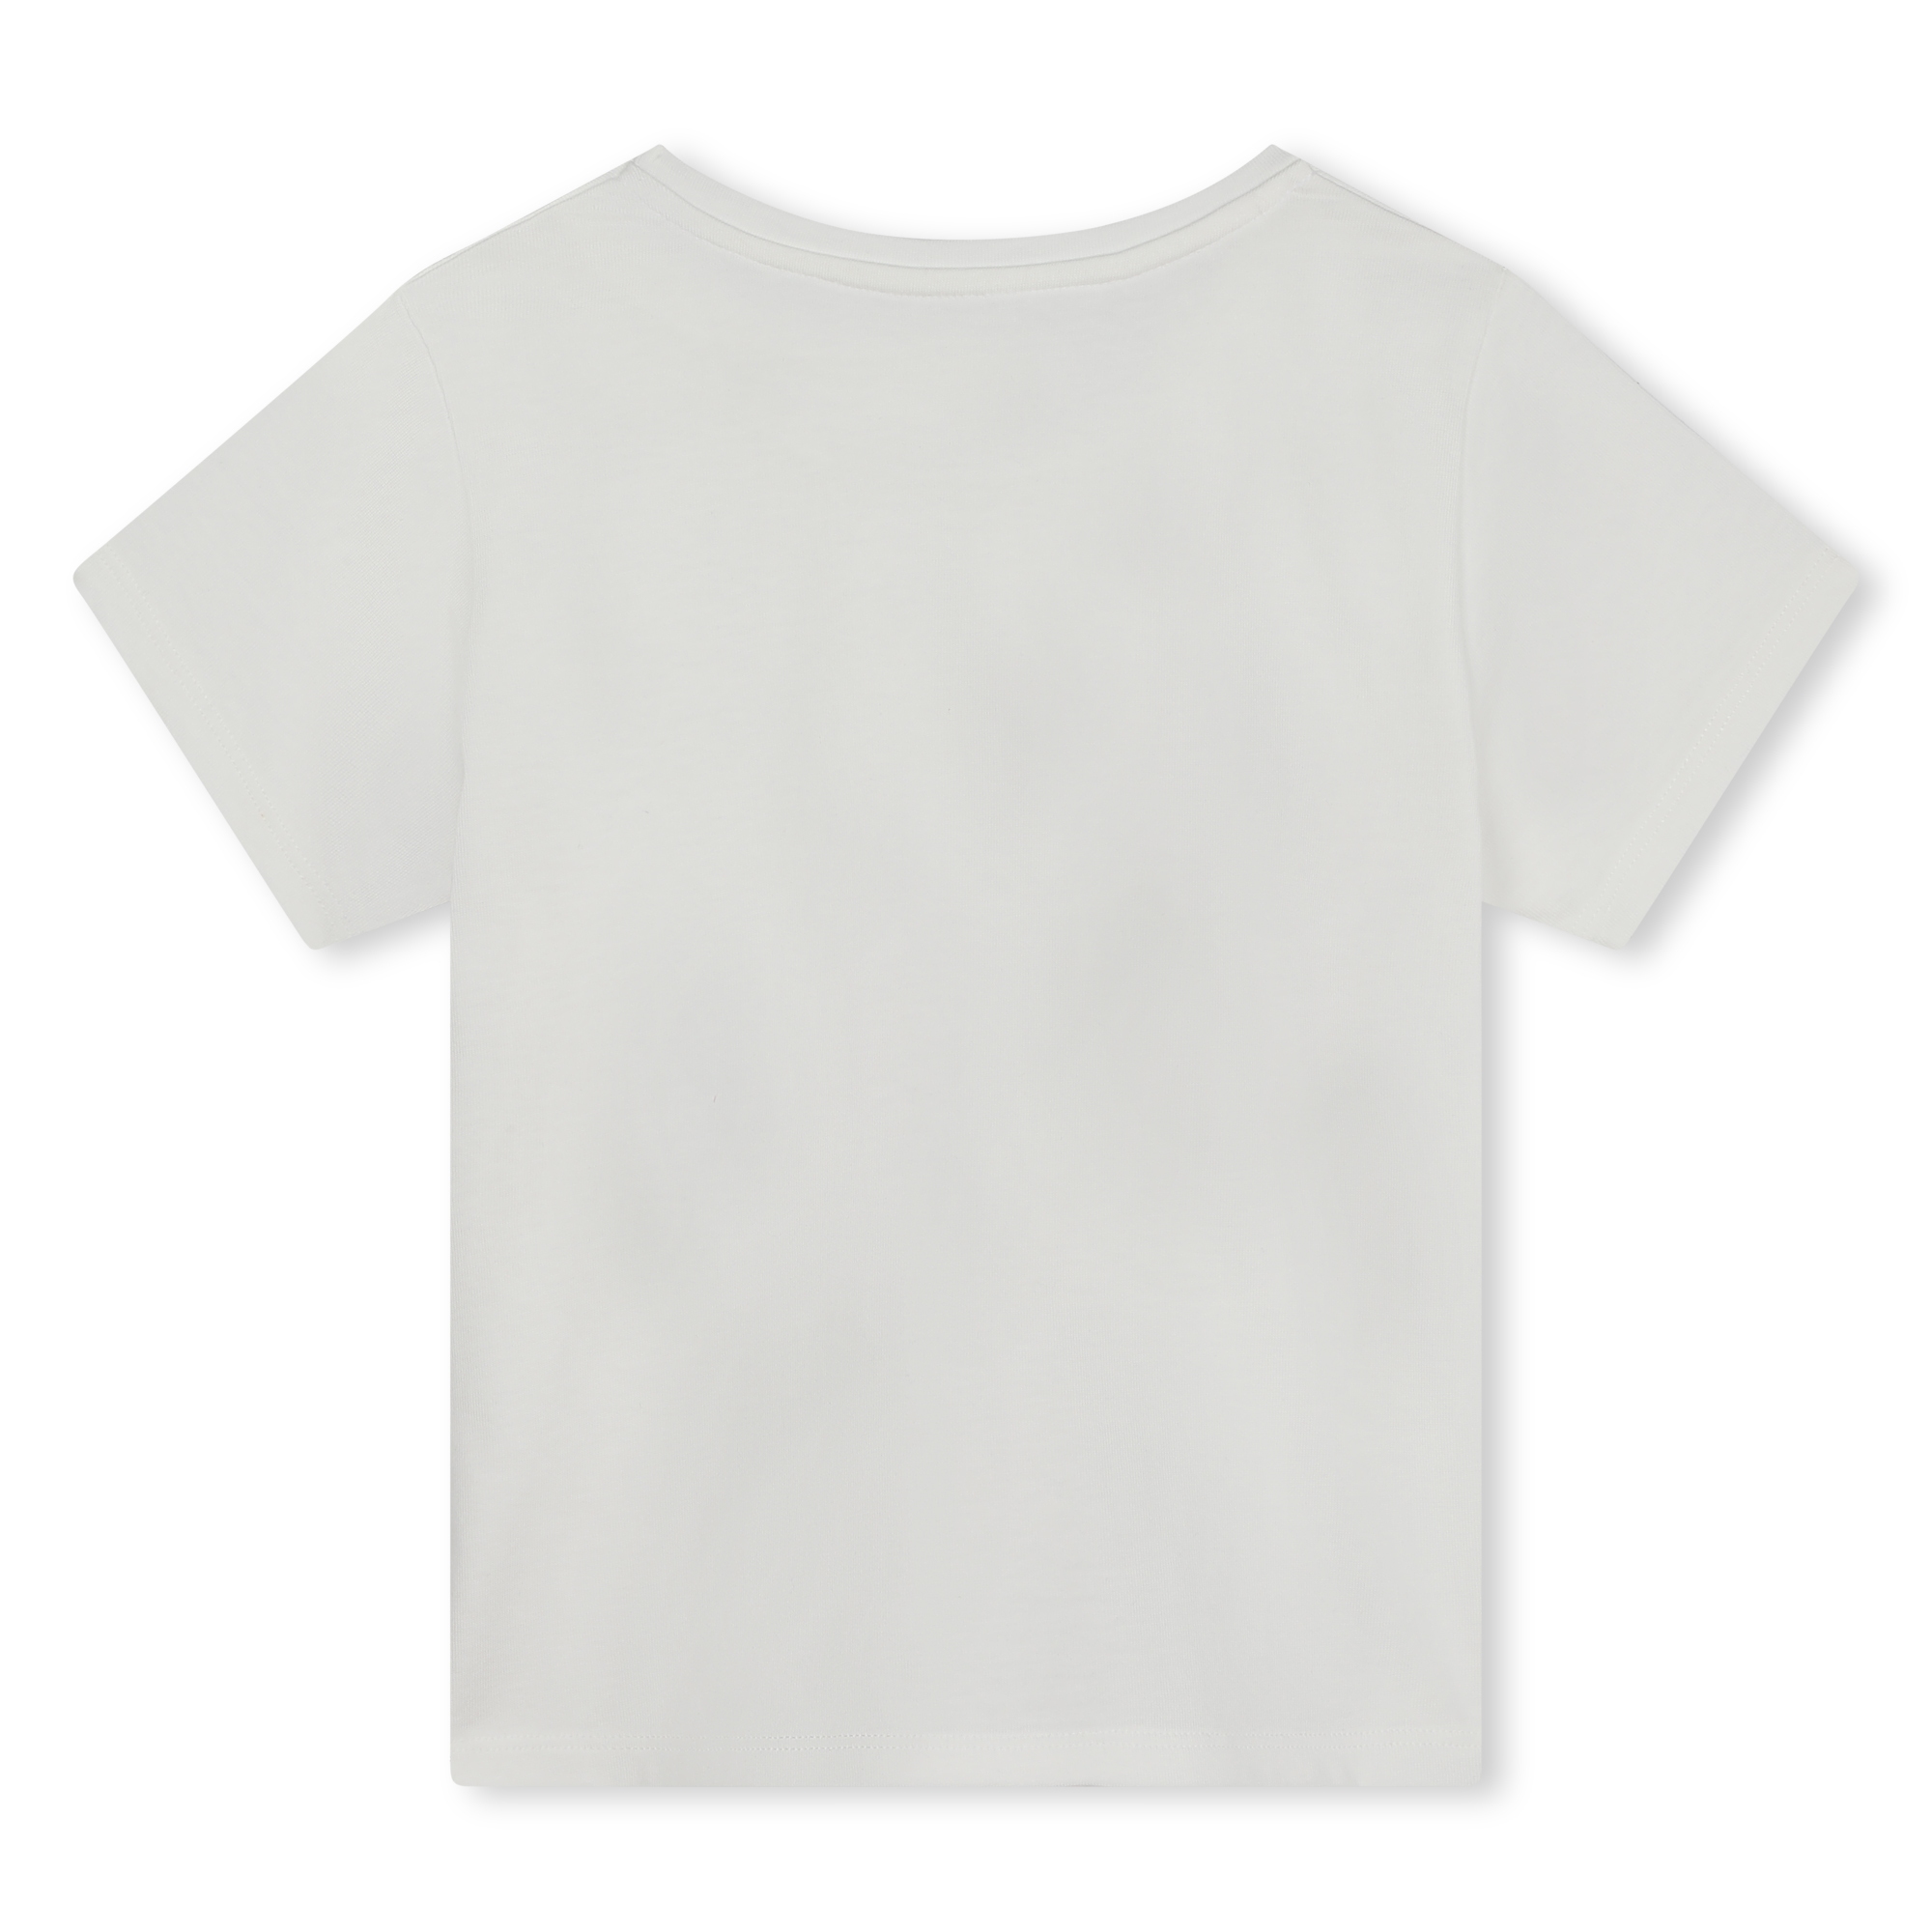 Kurzärmliges Baumwoll-T-Shirt MICHAEL KORS Für MÄDCHEN